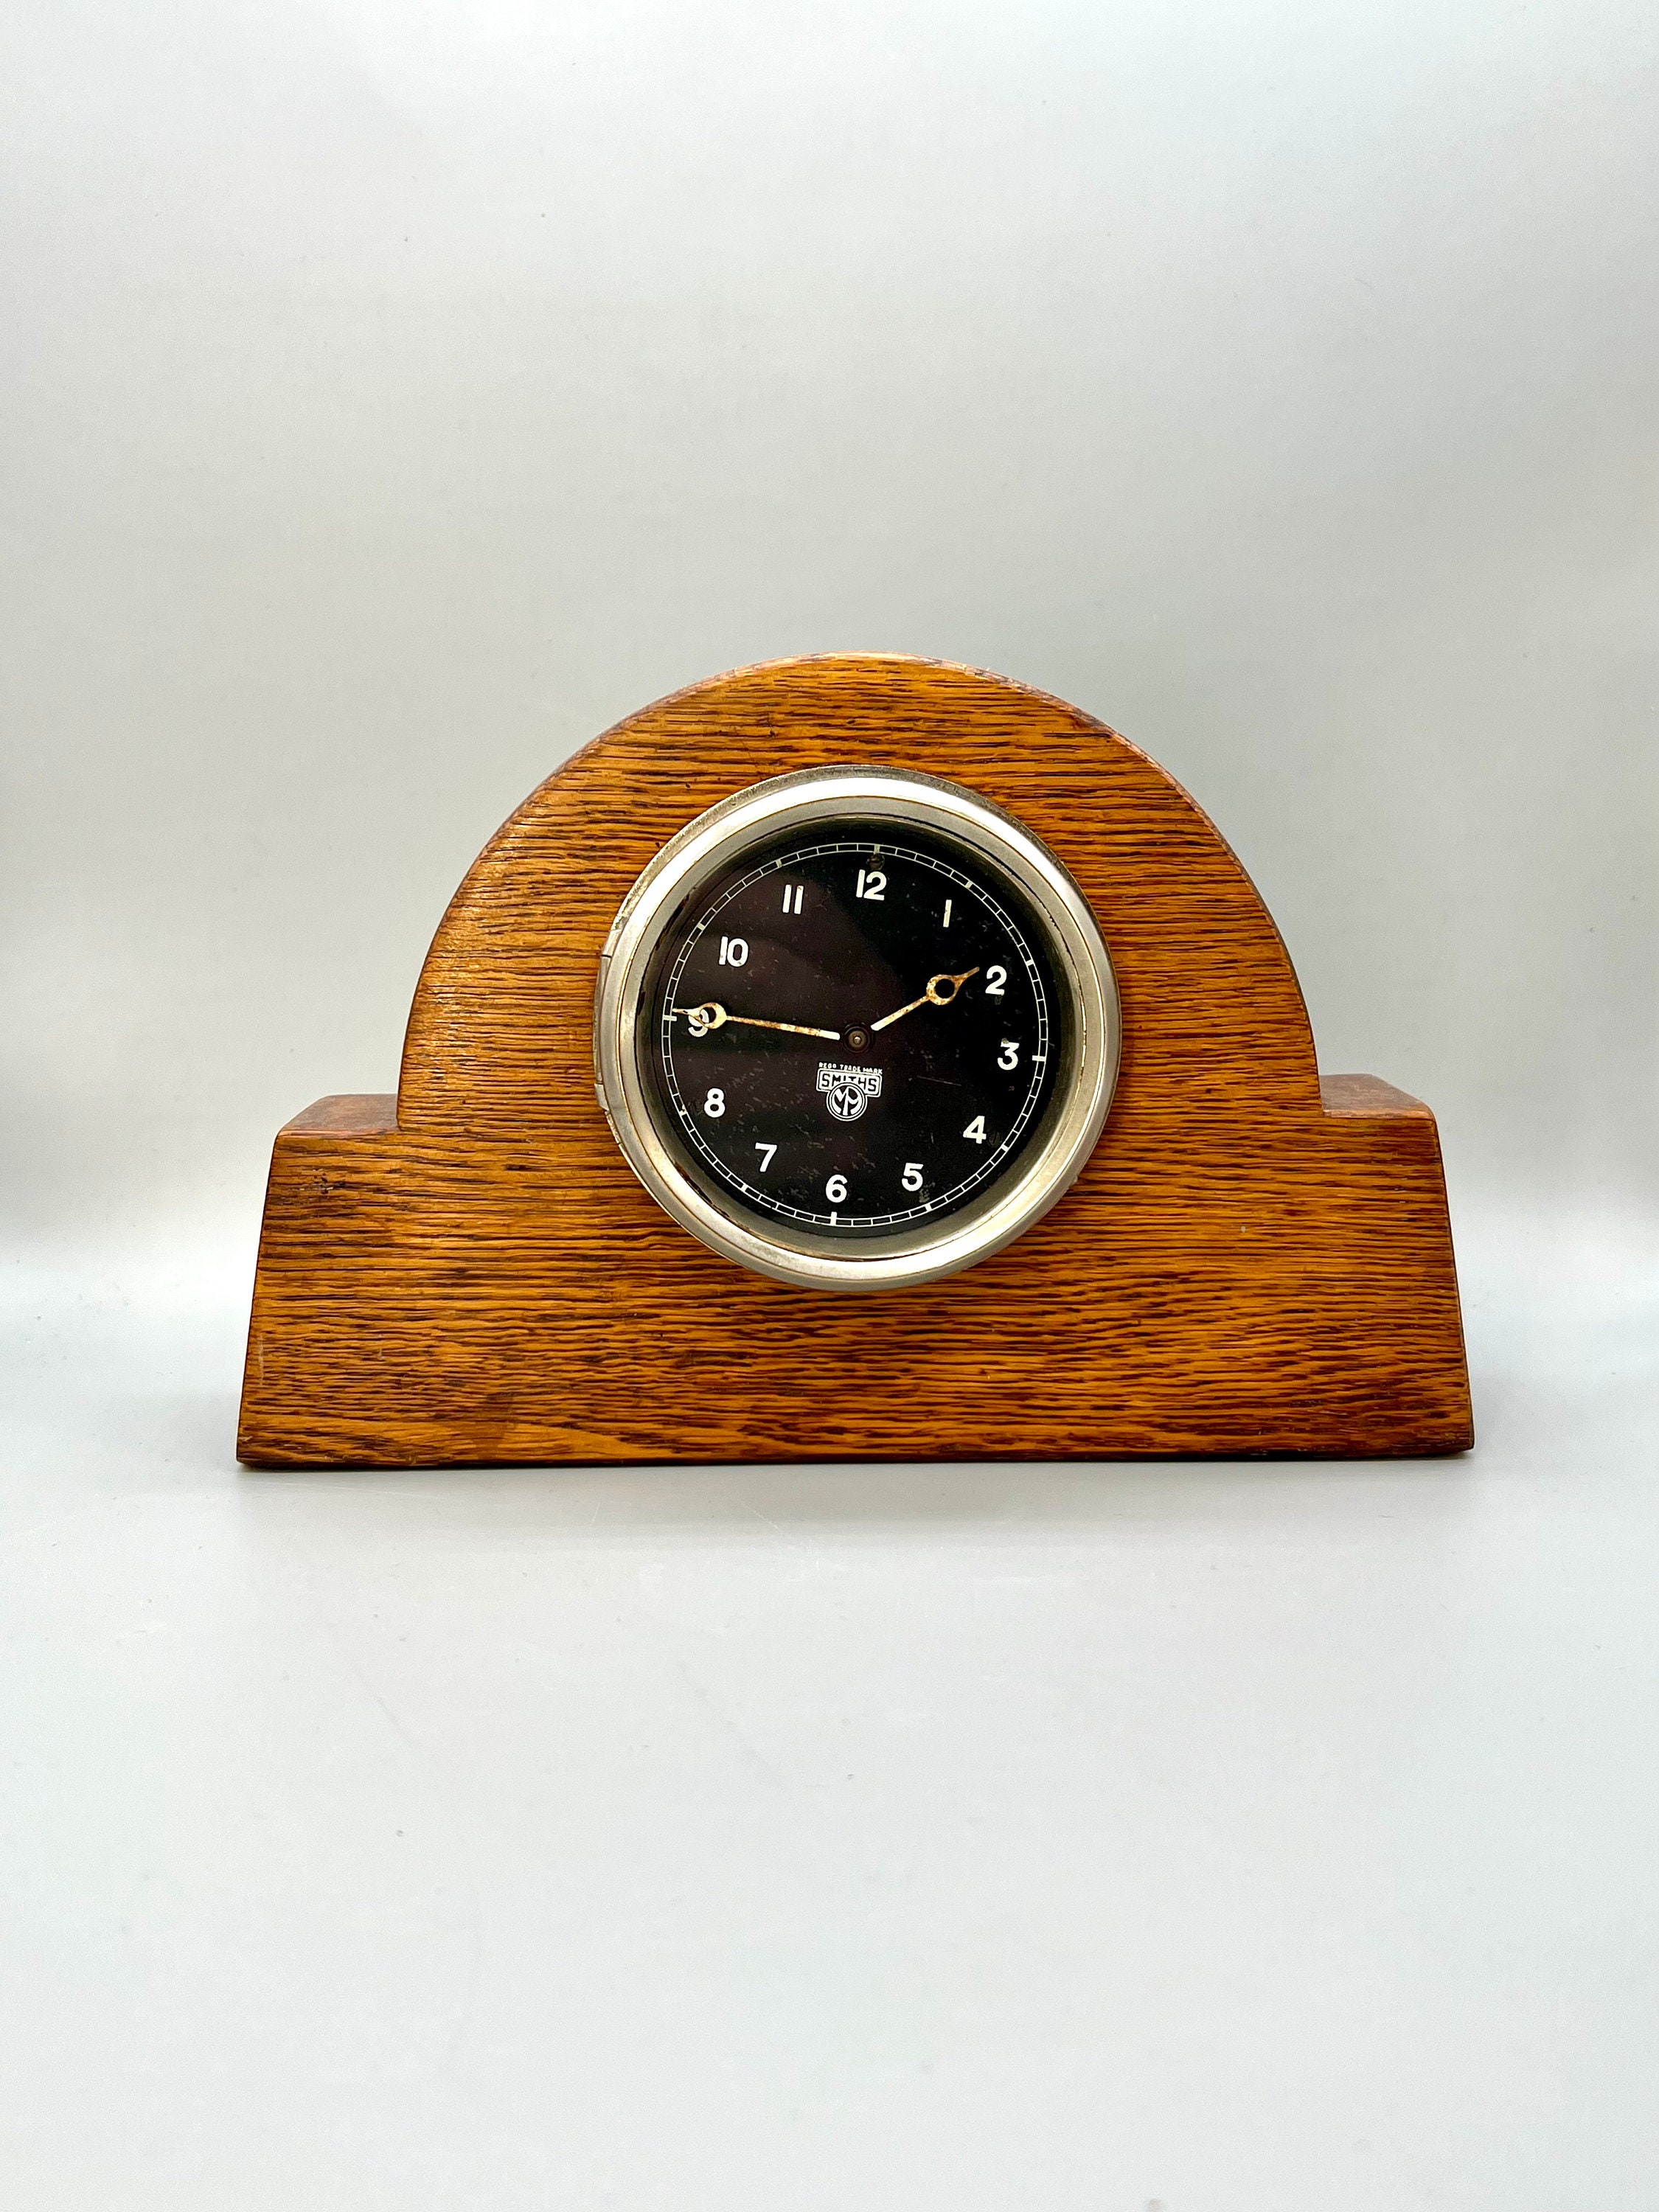 4 Stück kleine Digitaluhr Mini Auto Uhr Home Elektronische Uhr Auto  Armaturenbrett Uhr Uhr